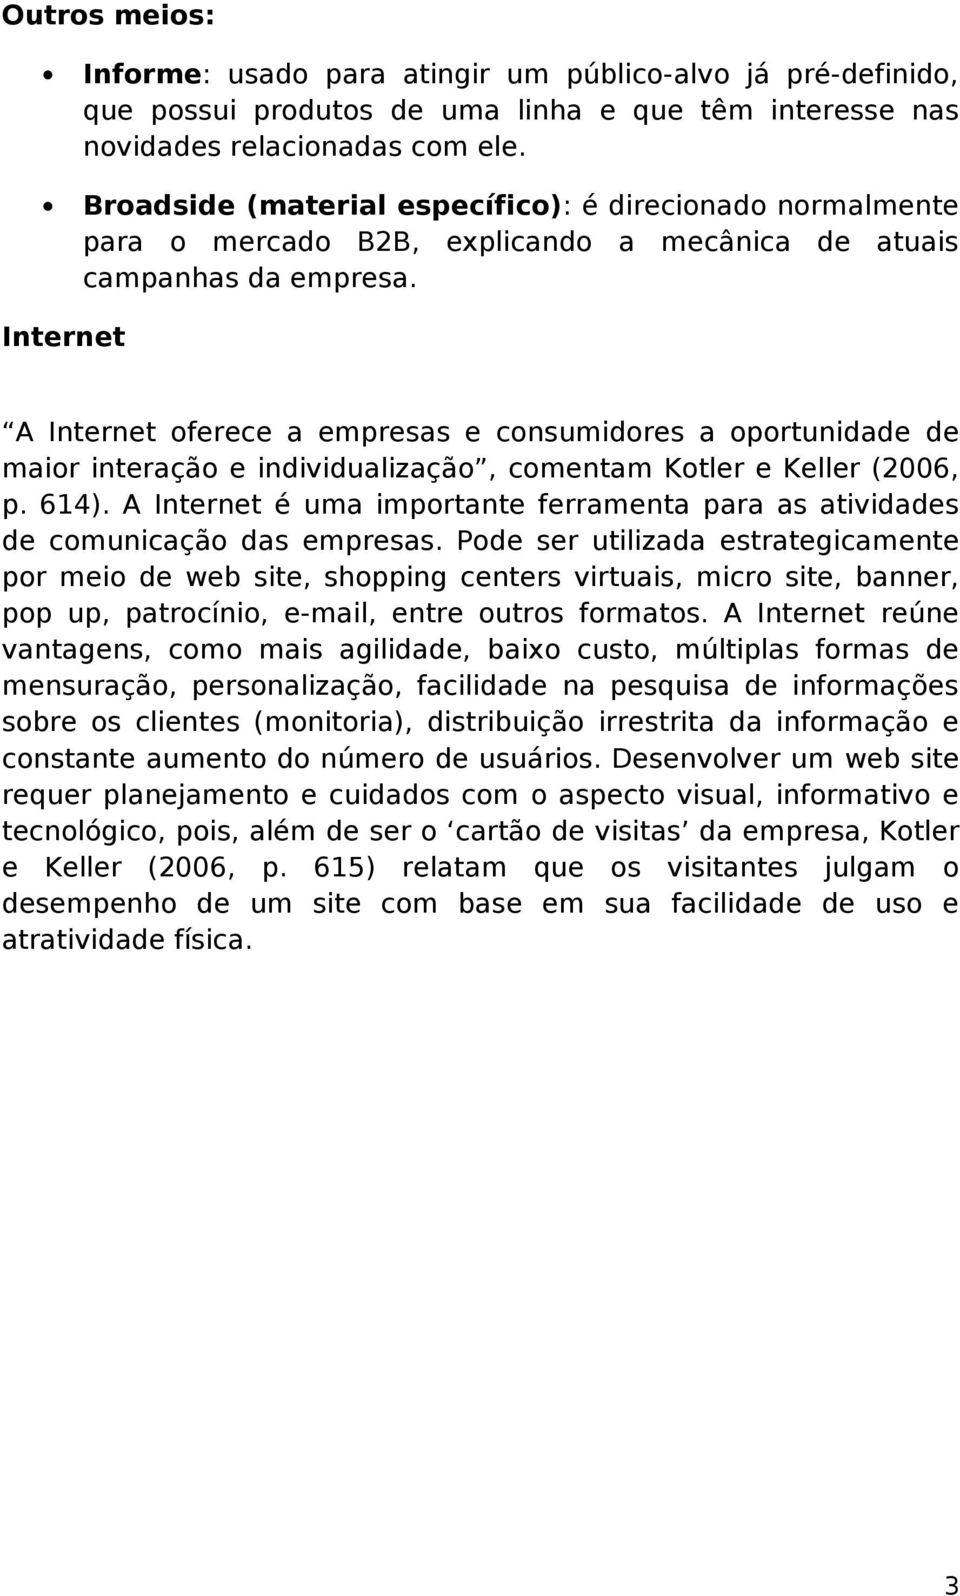 Internet A Internet oferece a empresas e consumidores a oportunidade de maior interação e individualização, comentam Kotler e Keller (2006, p. 614).